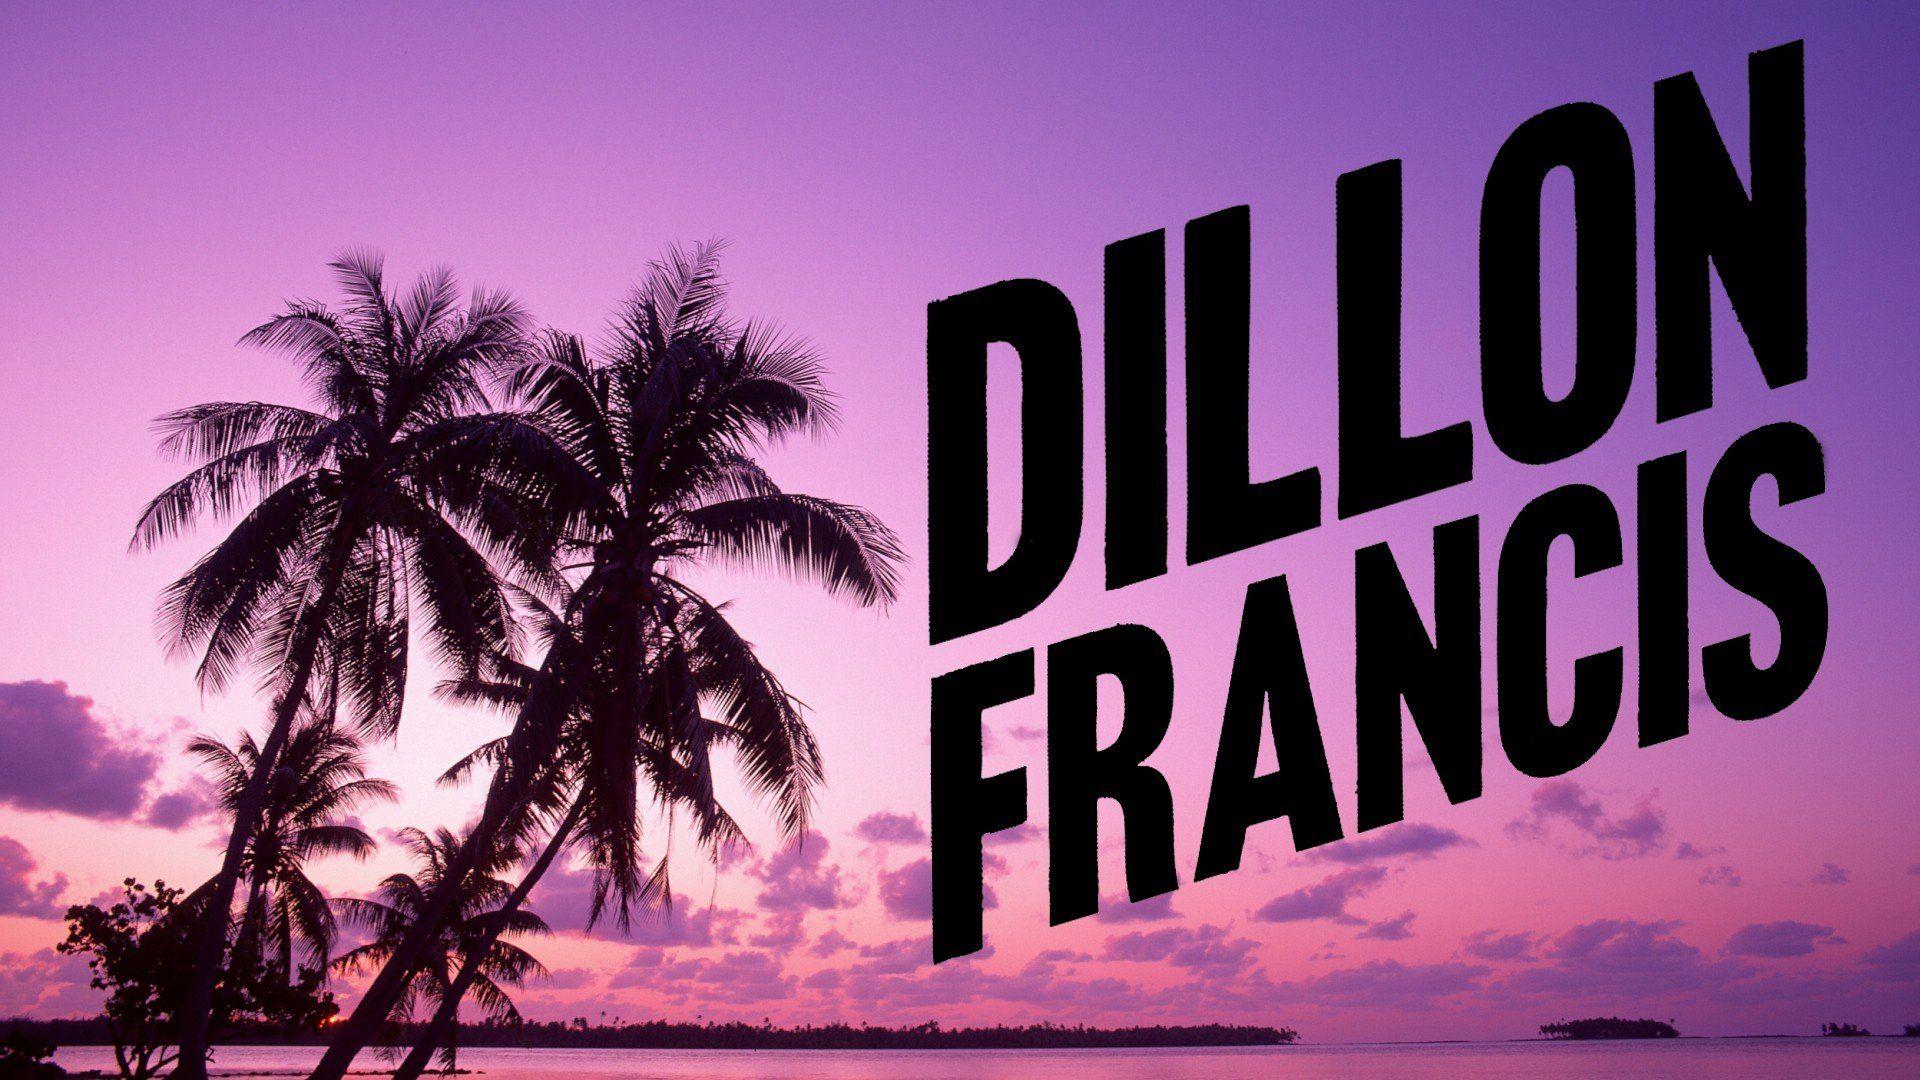 Dillon Francis